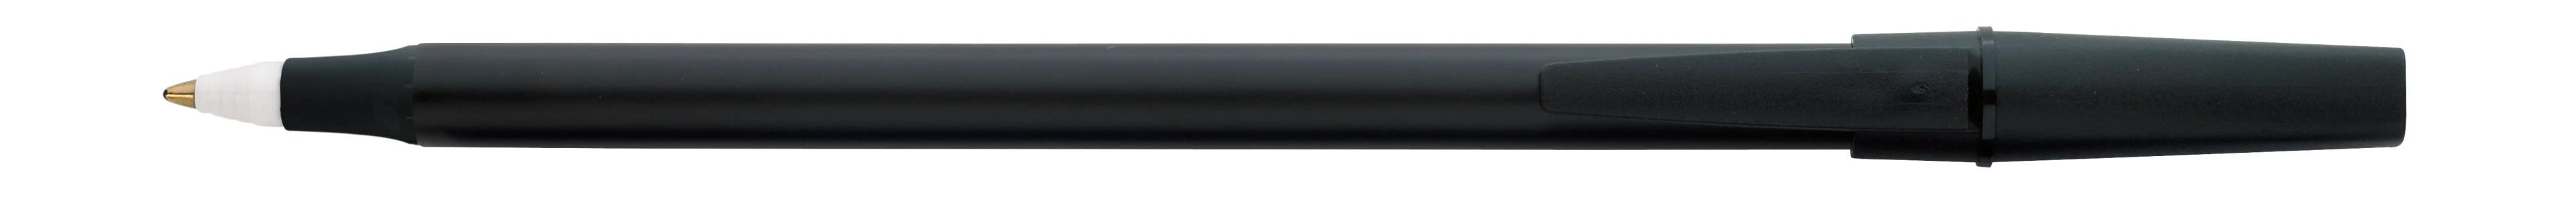 Corporate Promo Stick Pen 2 of 33